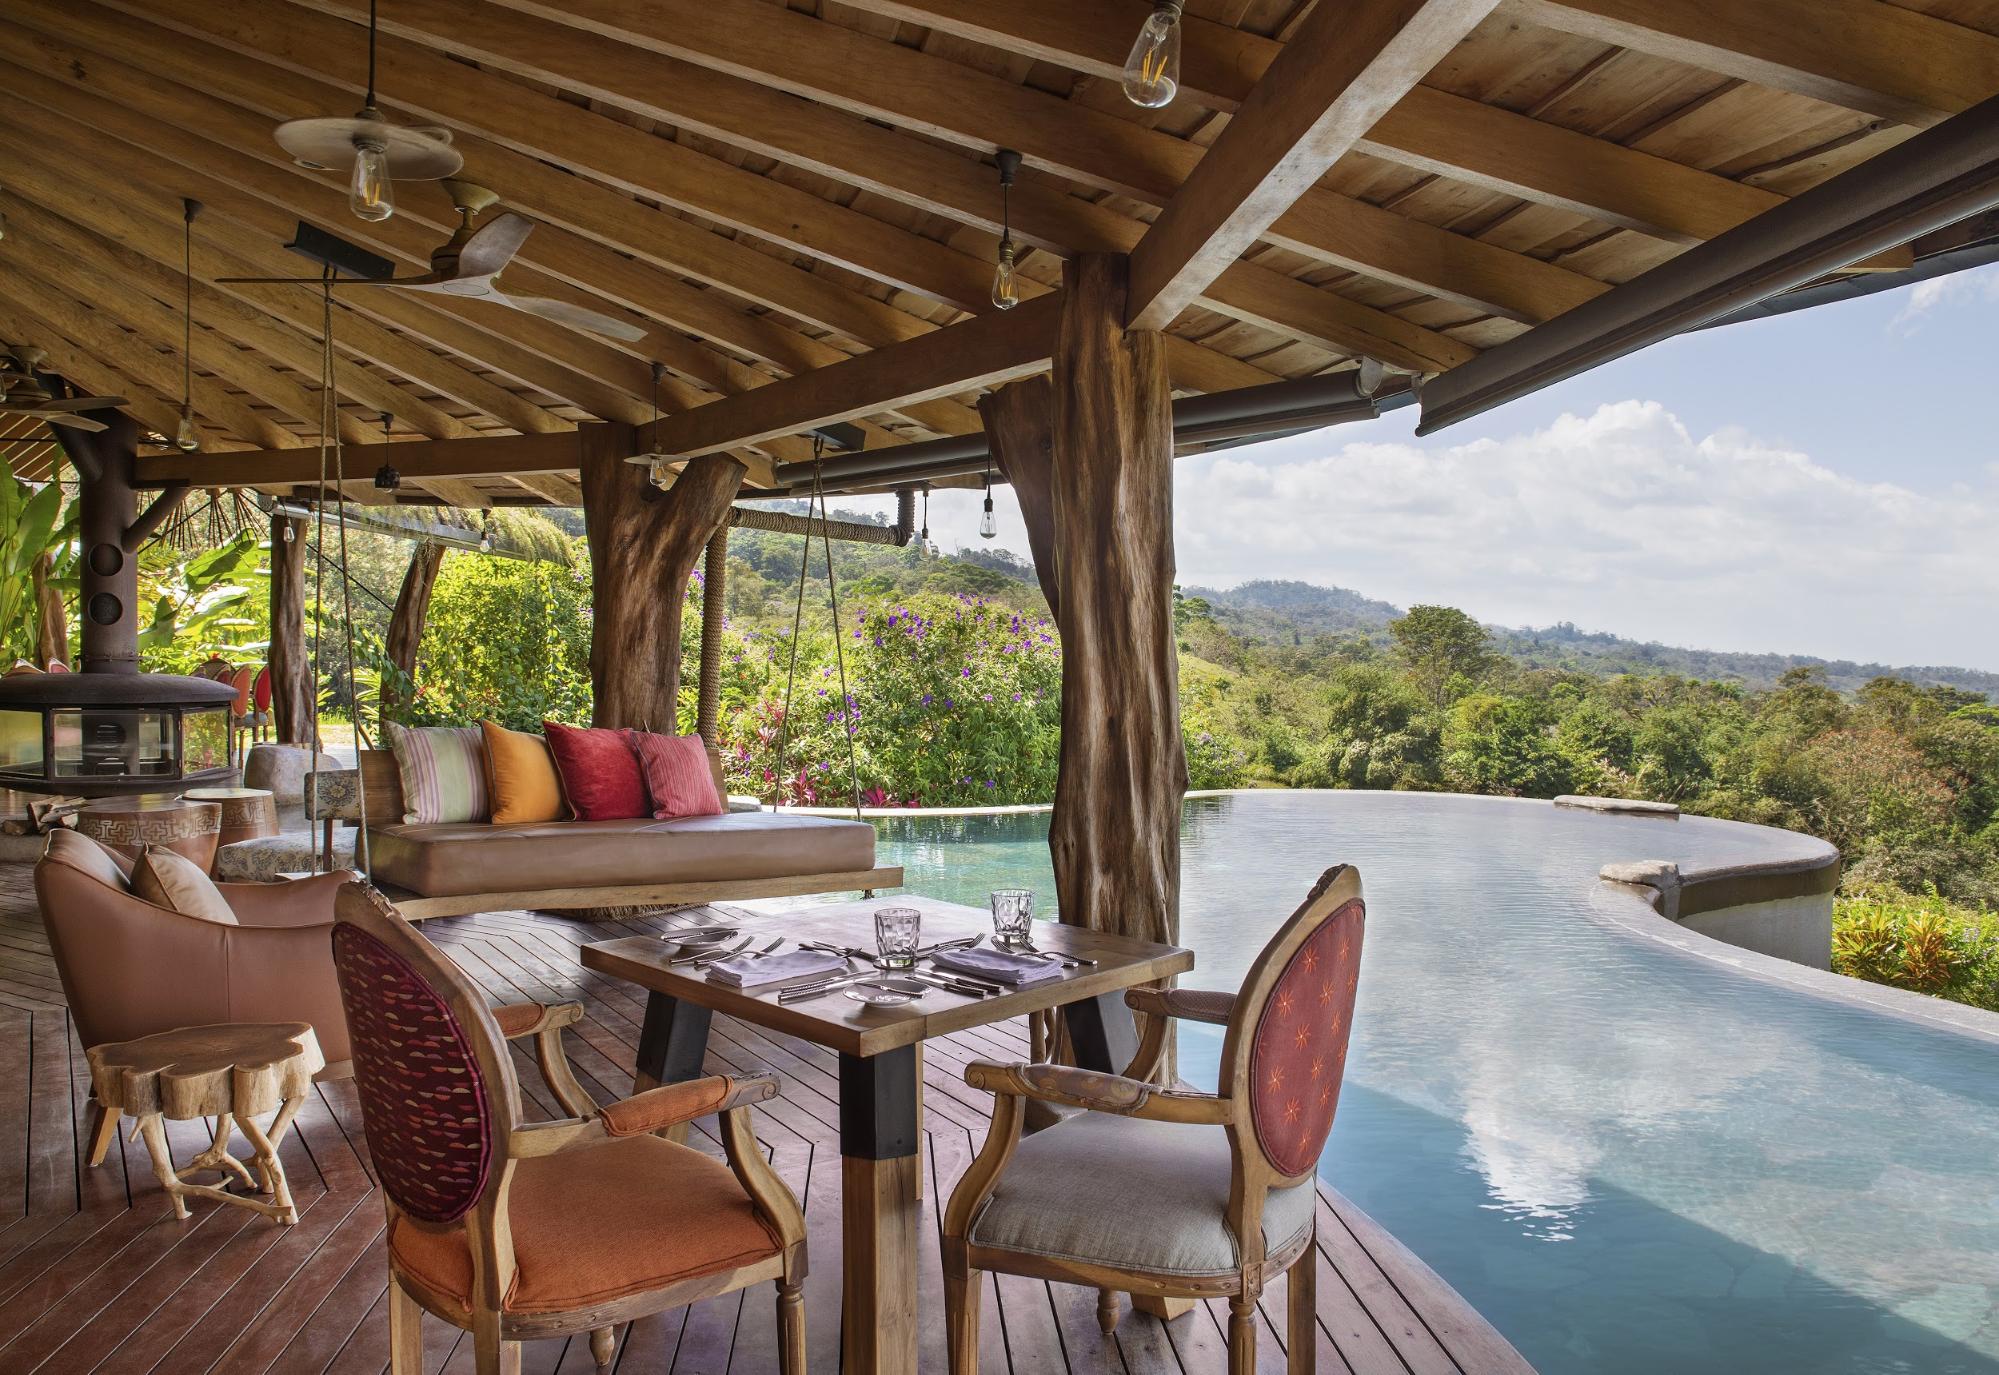 Nếu bạn đang tìm kiếm một nơi nghỉ dưỡng tuyệt vời tại Costa Rica, Nhà khách Origins sẽ là sự lựa chọn hoàn hảo. Khách sạn được đánh giá cao về cả mặt giá cả và dịch vụ, hãy xem hình ảnh liên quan để có những trải nghiệm thú vị. 